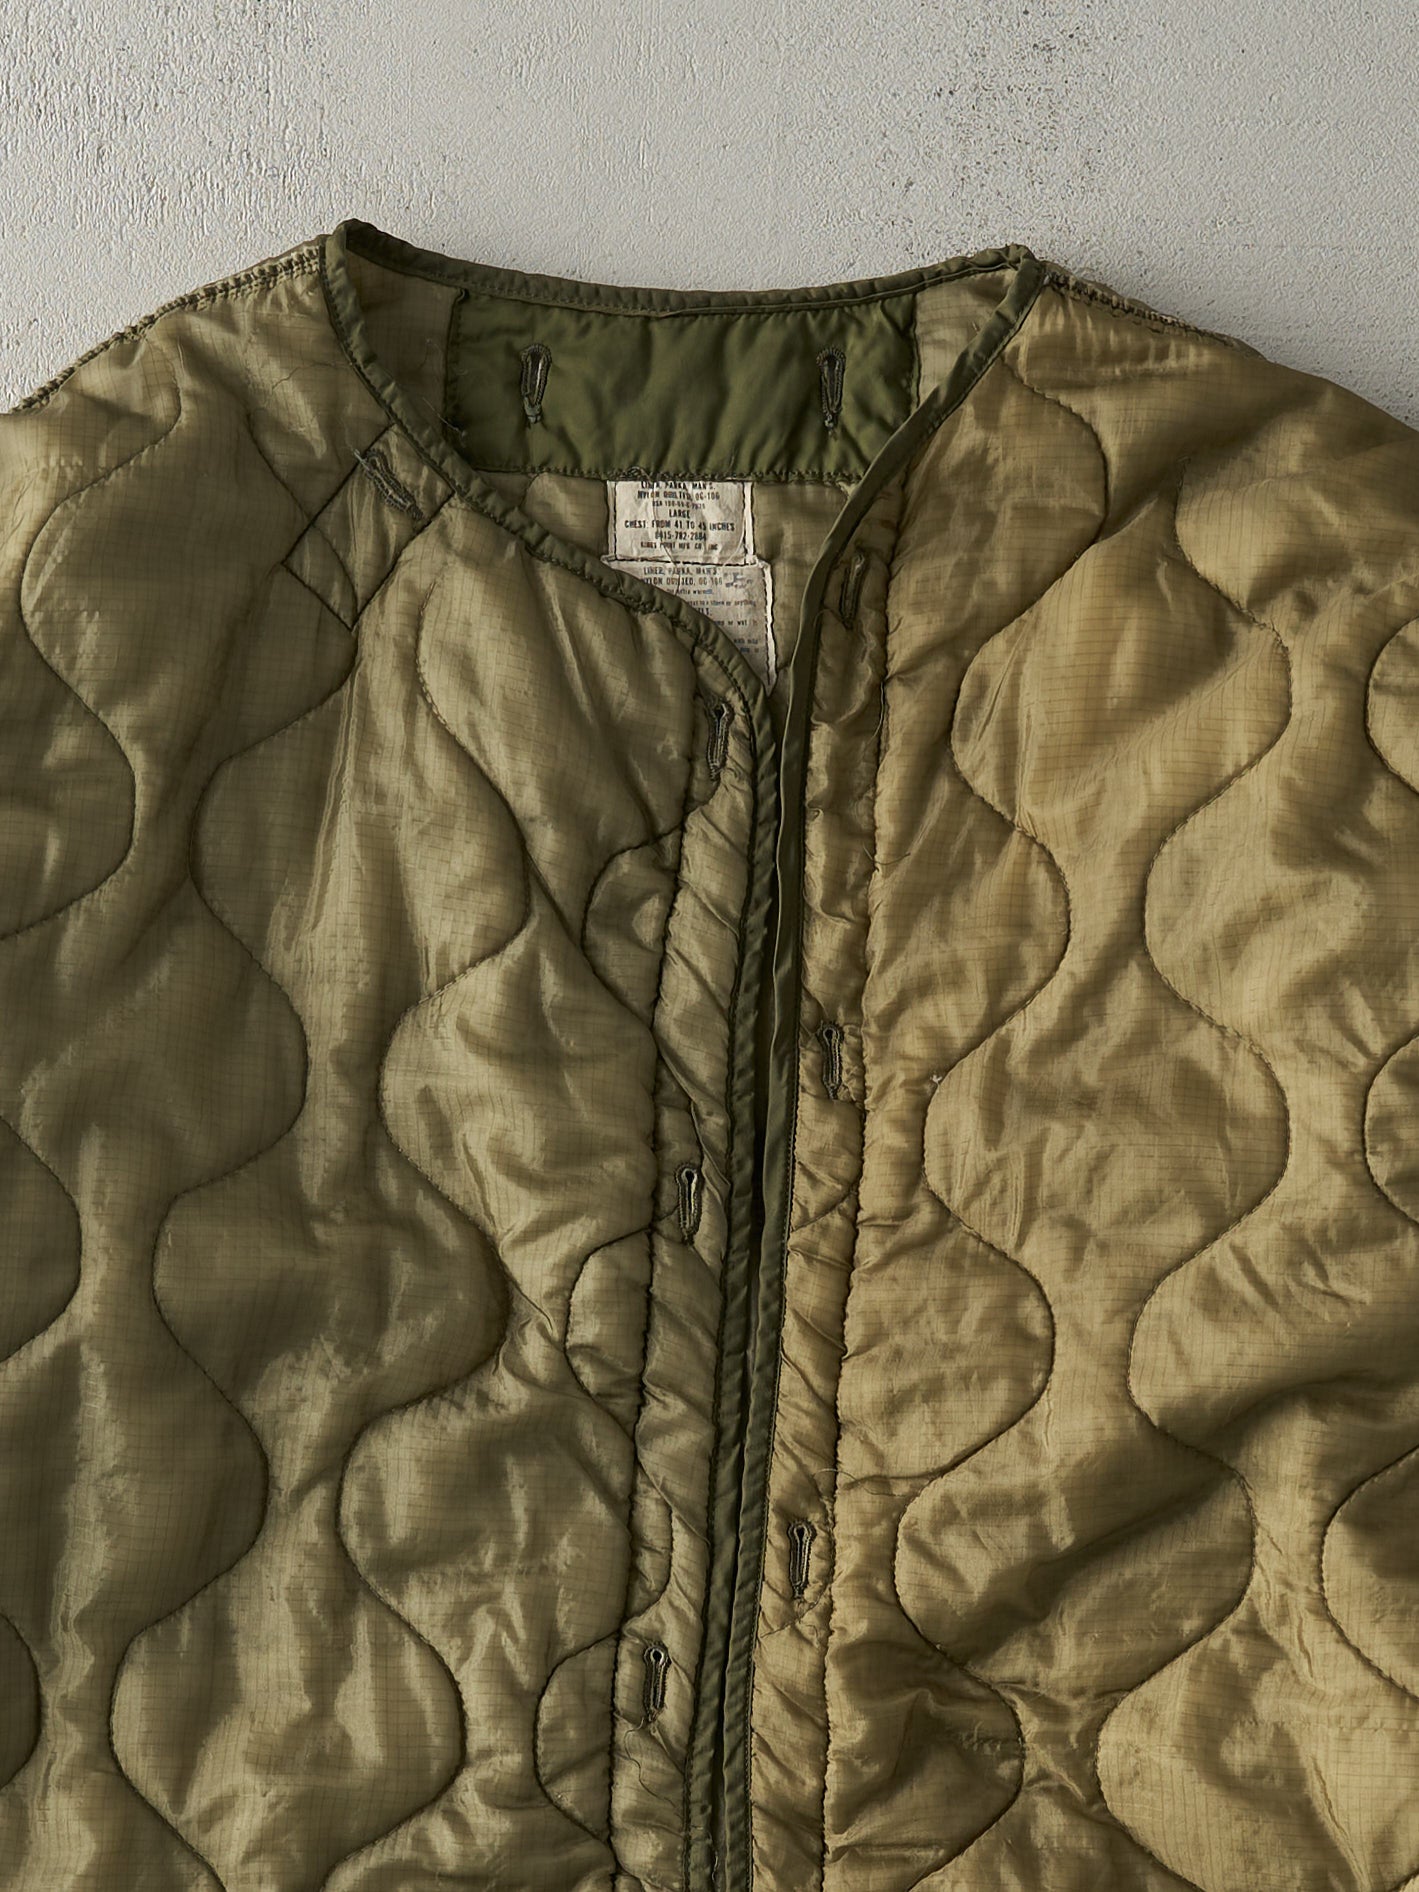 Vintage 90s Army Green OG-106 Nylon Parka Liner Jacket (L/XL)